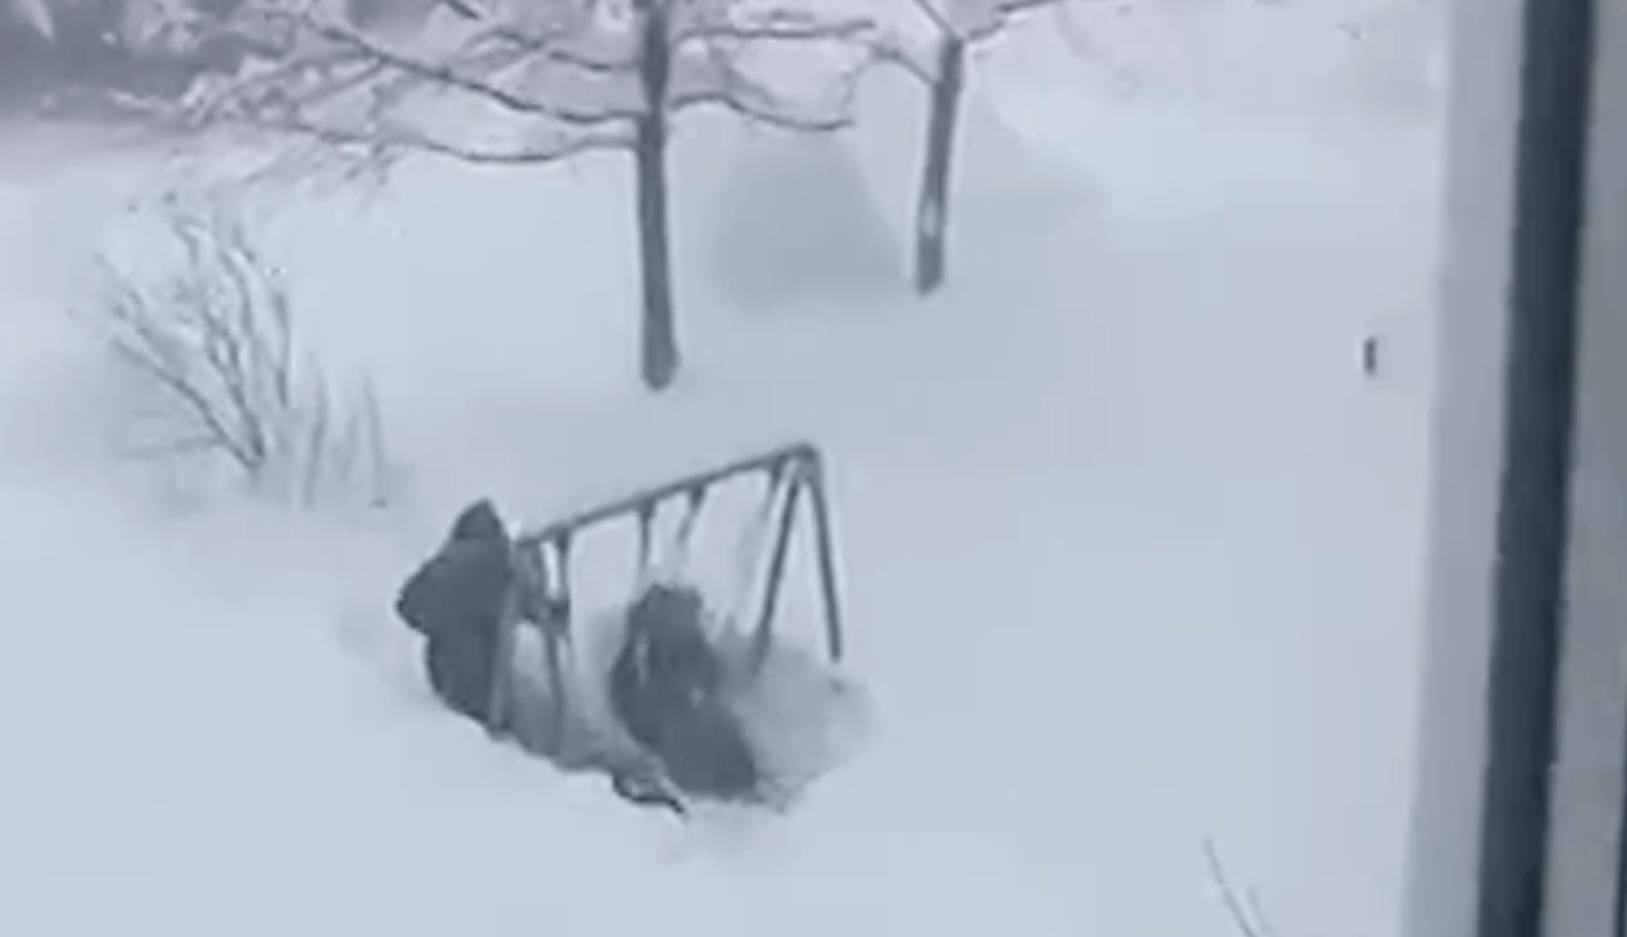 Суровая зима: Огромные сугробы не помешали детям в Приморье кататься на качелях и играть во дворе